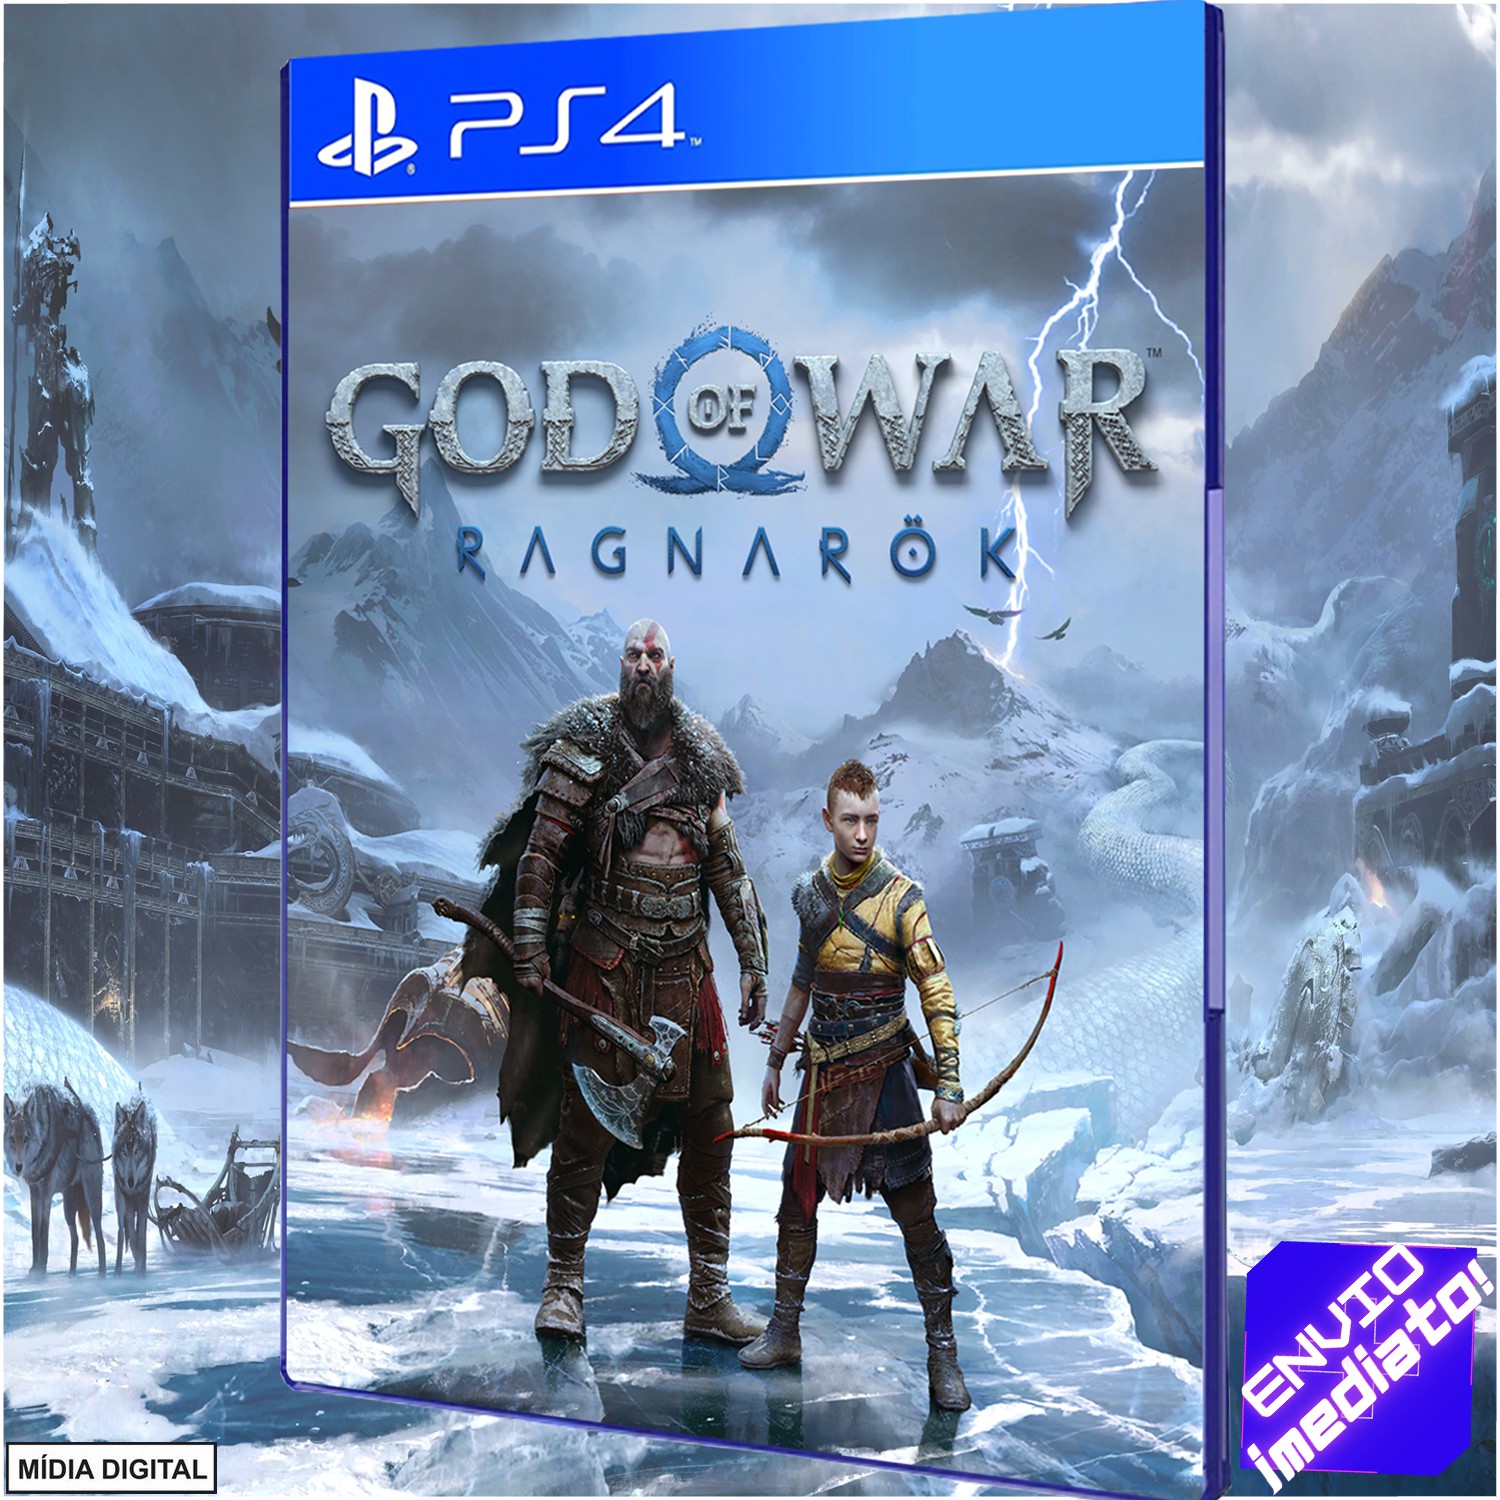 Is God of War Ragnarok on PS4?